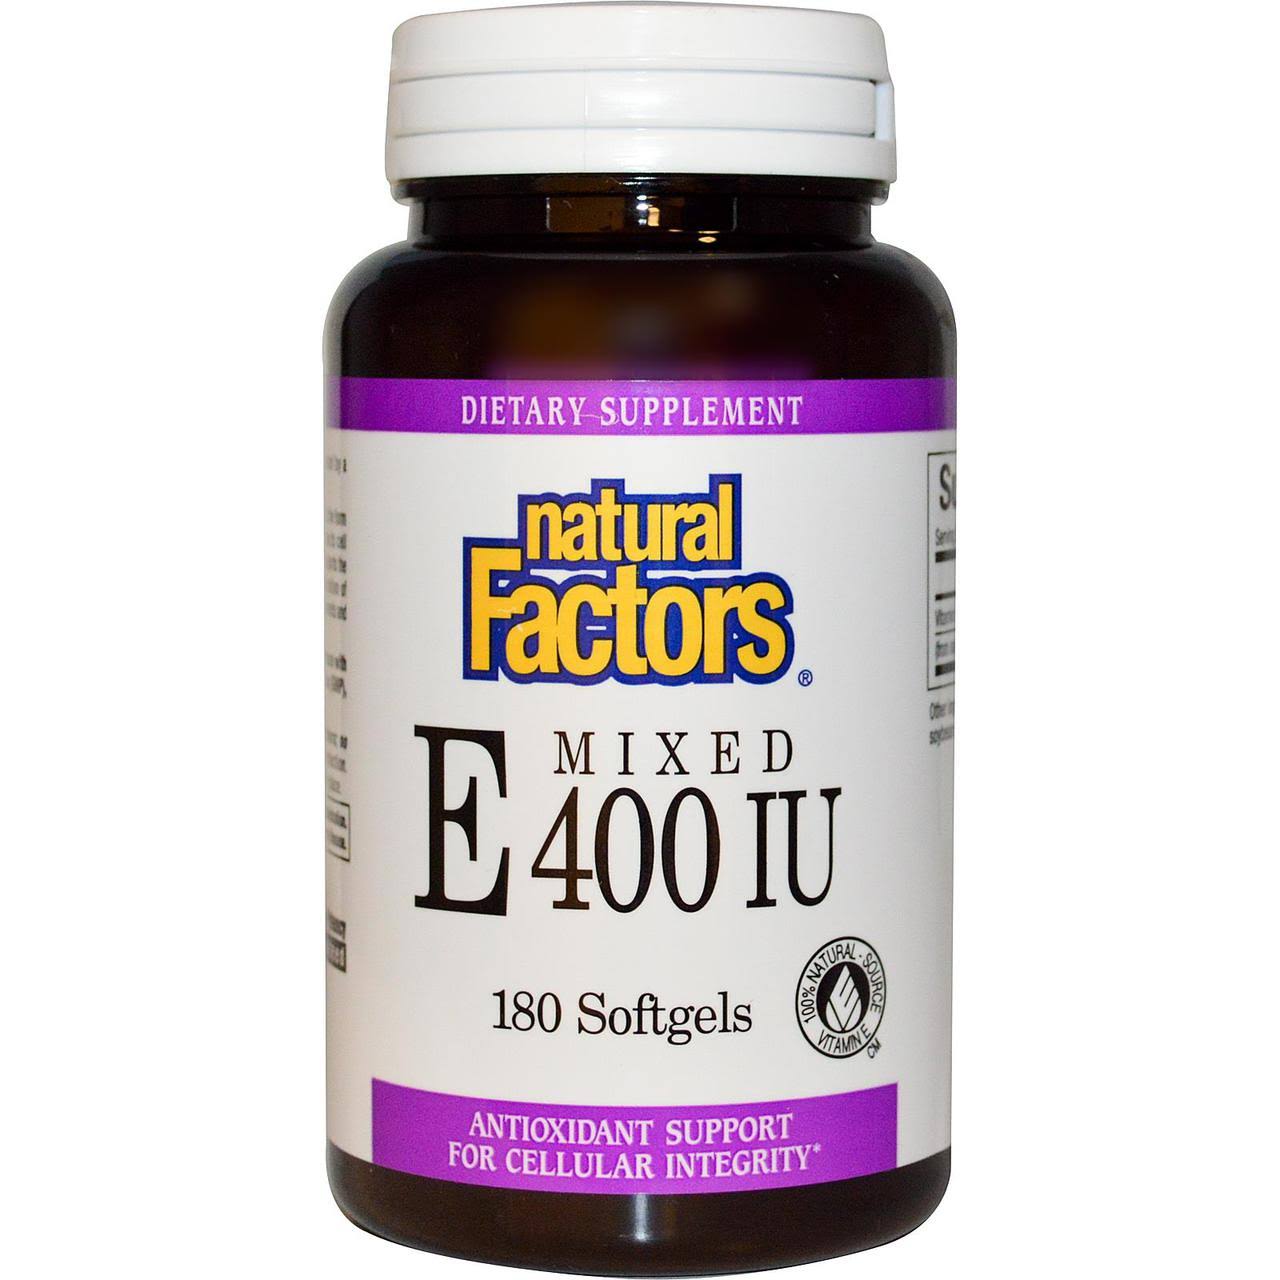 Natural Factors Mixed Vitamin - E400IU, 180ct